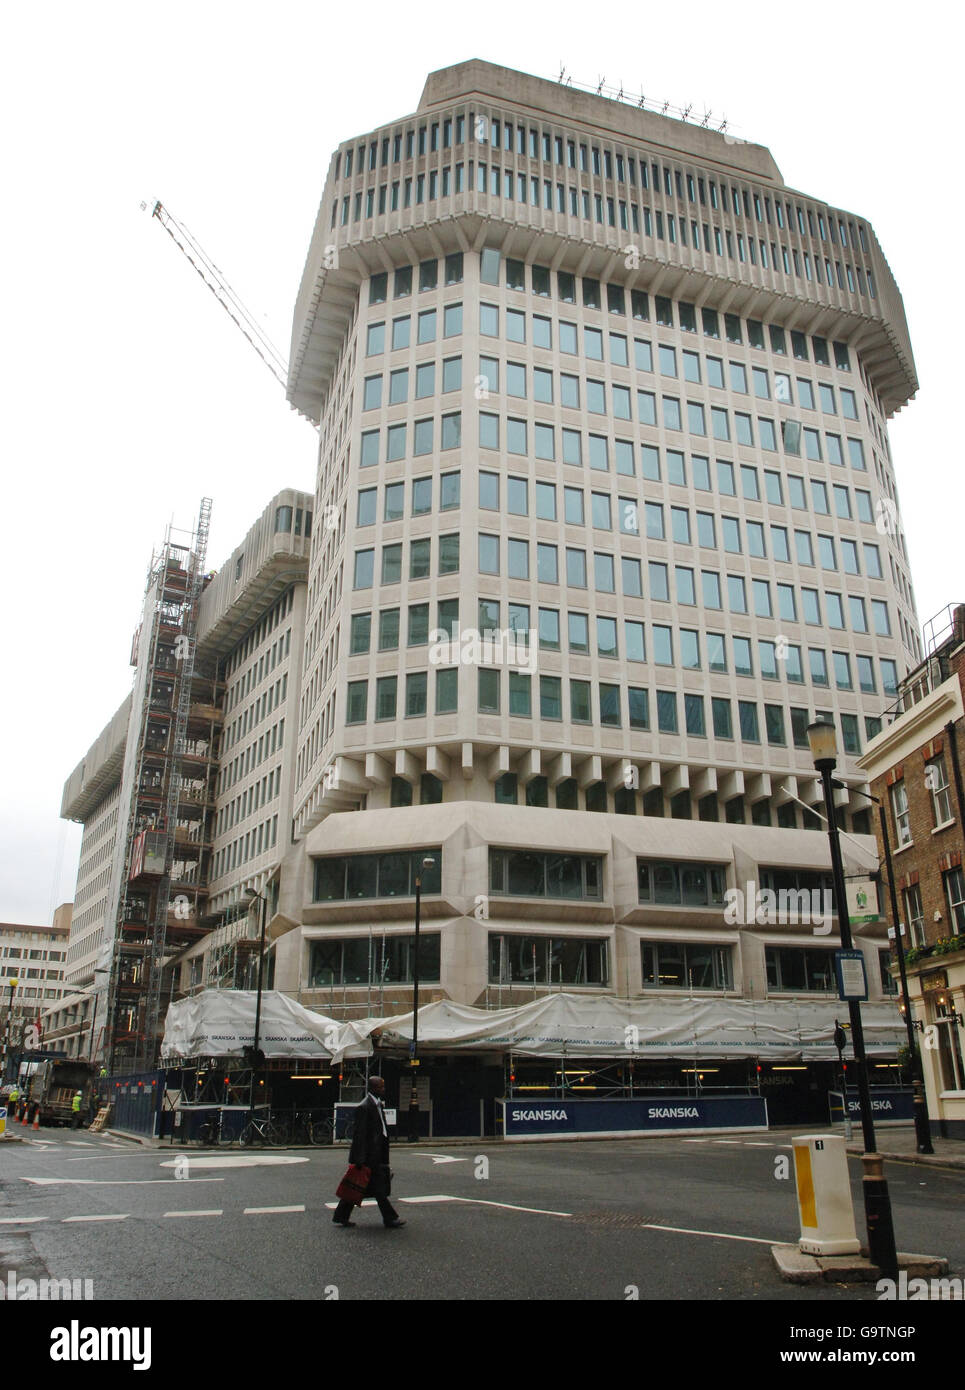 Le bâtiment du Home Office à la porte de la Reine Anne, dans le centre de Londres, qui deviendra le siège du ministère de la Justice récemment annoncé. Banque D'Images